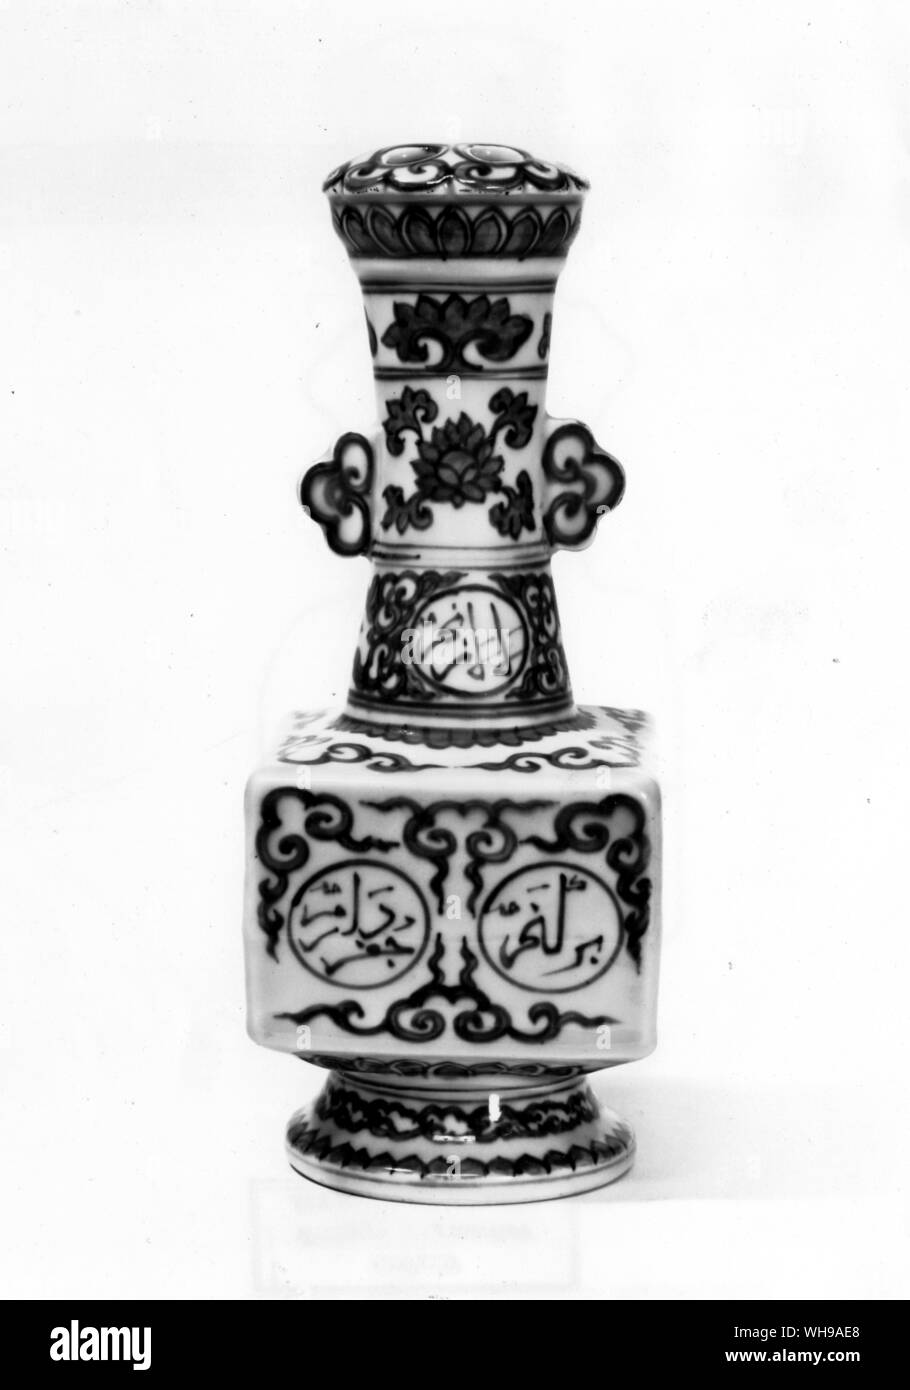 A principios del siglo XVI jarrón de porcelana azul y blanco con una inscripción árabe, probablemente hecho por el uso de los musulmanes eunucos en la corte china. Foto de stock